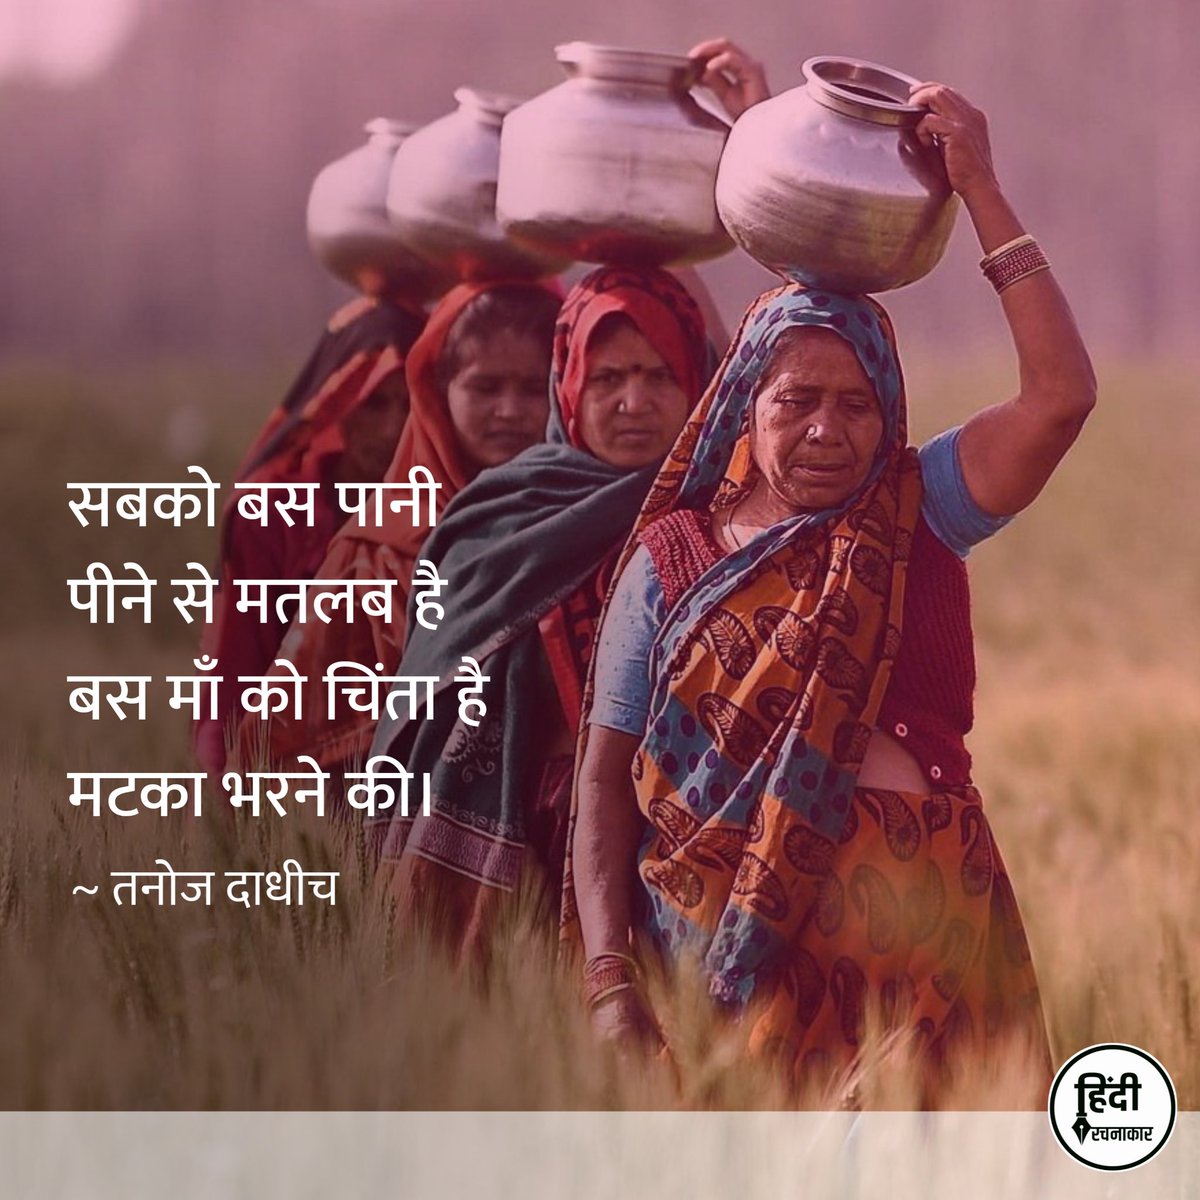 सबको बस पानी पीने से मतलब है
बस माँ को चिंता है मटका भरने की।

~ तनोज दाधीच
@tanojdadhich

#Hindirachnakaar